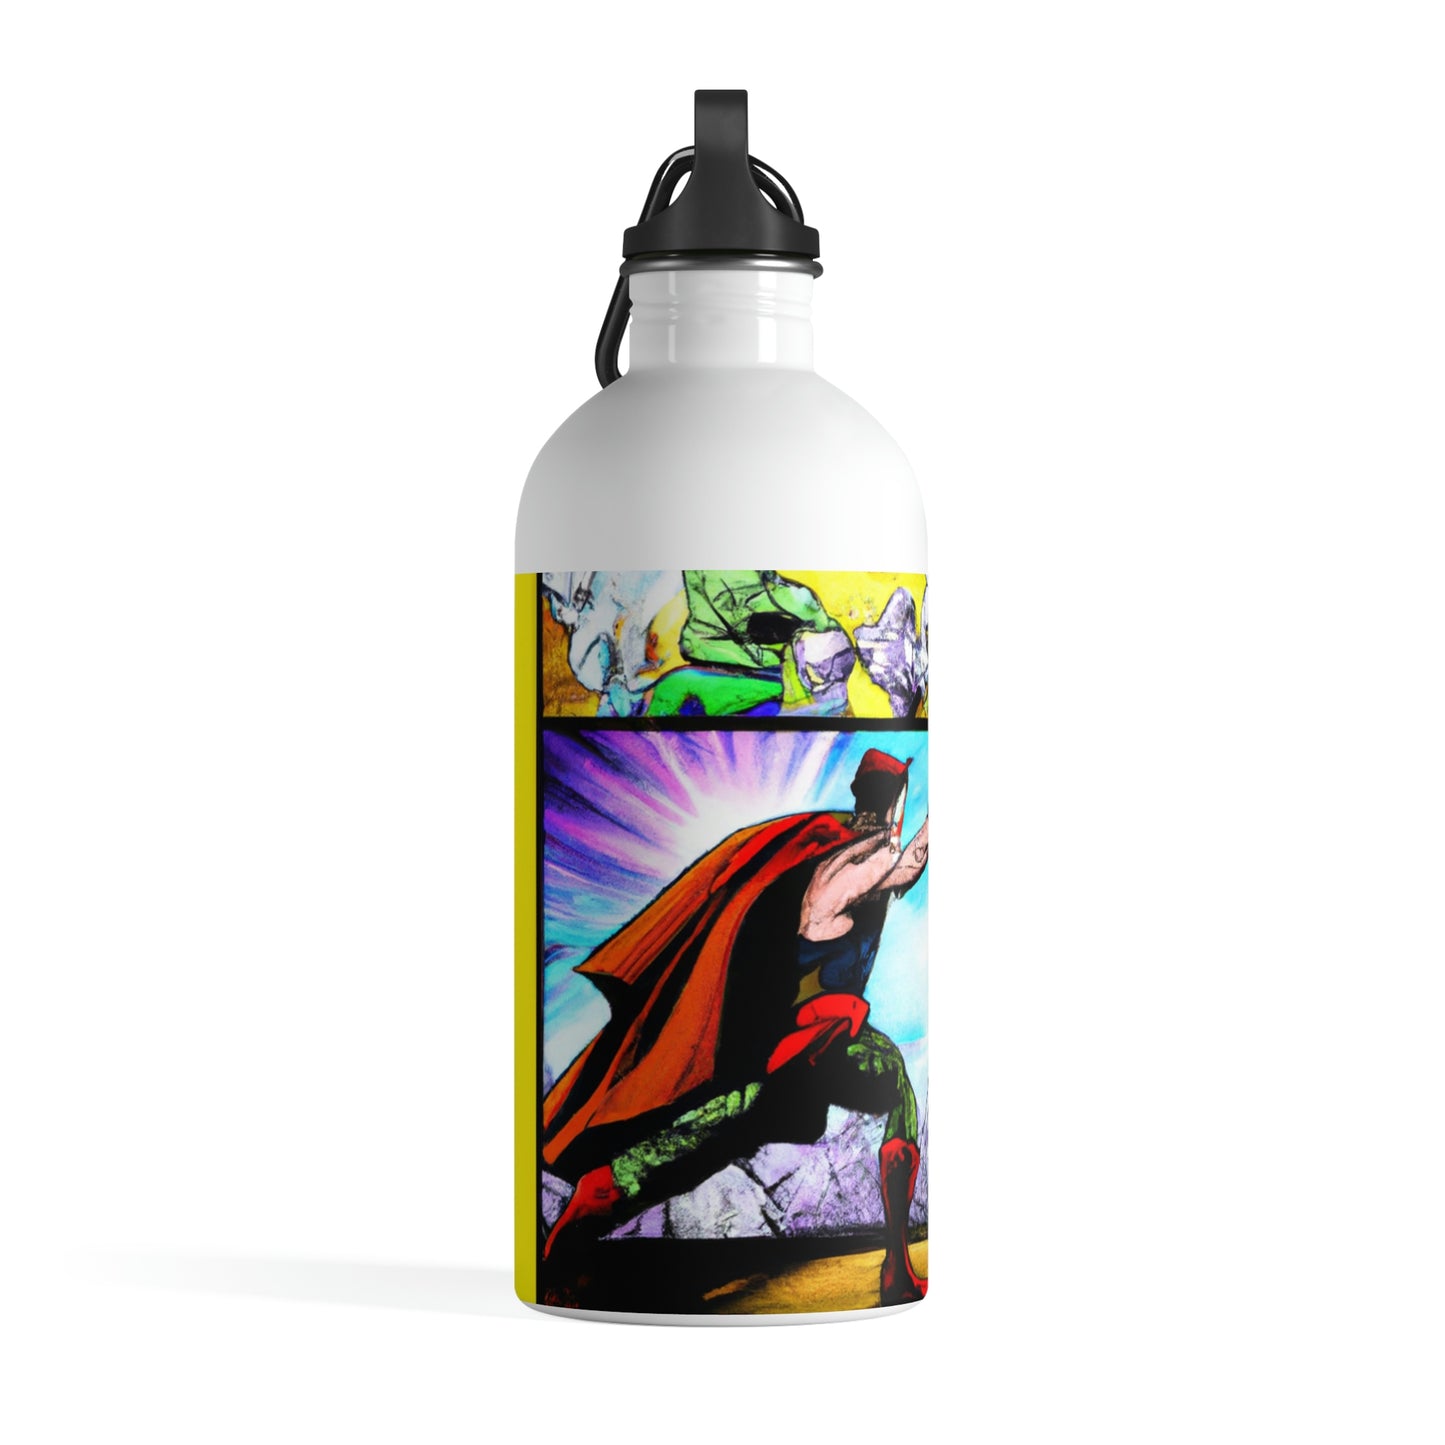 Superhero Showdown! - The Alien Stainless Steel Water Bottle